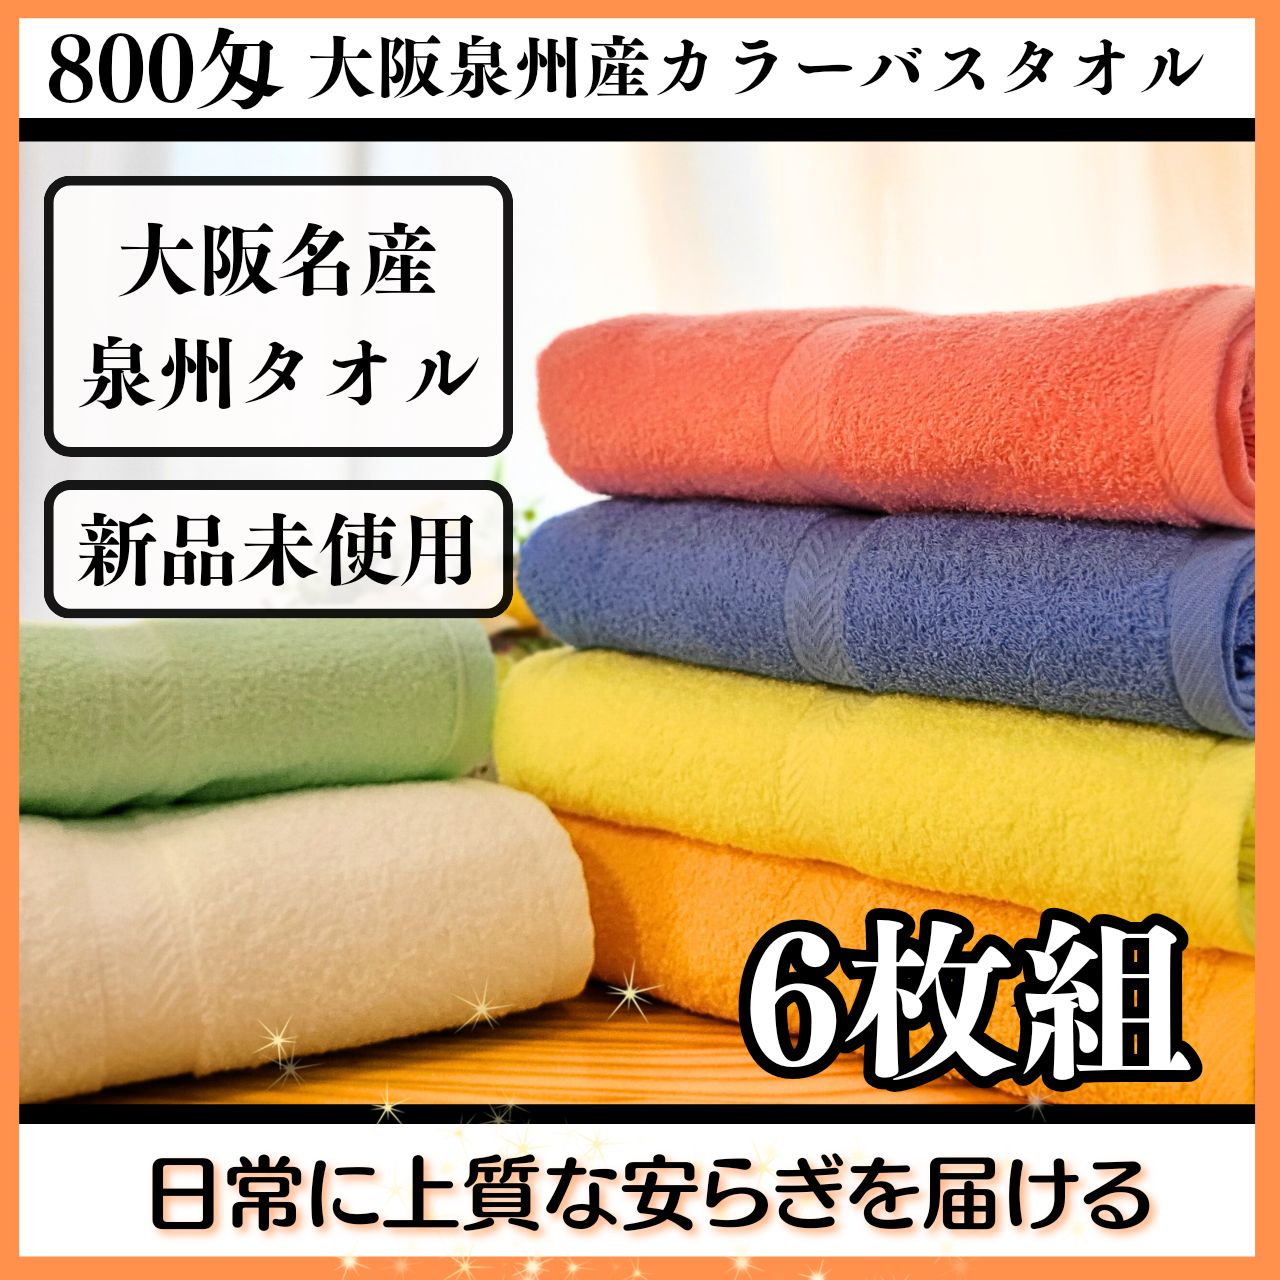 泉州タオル 800匁ピンクバスタオルセット6枚組 タオル新品 まとめ売り